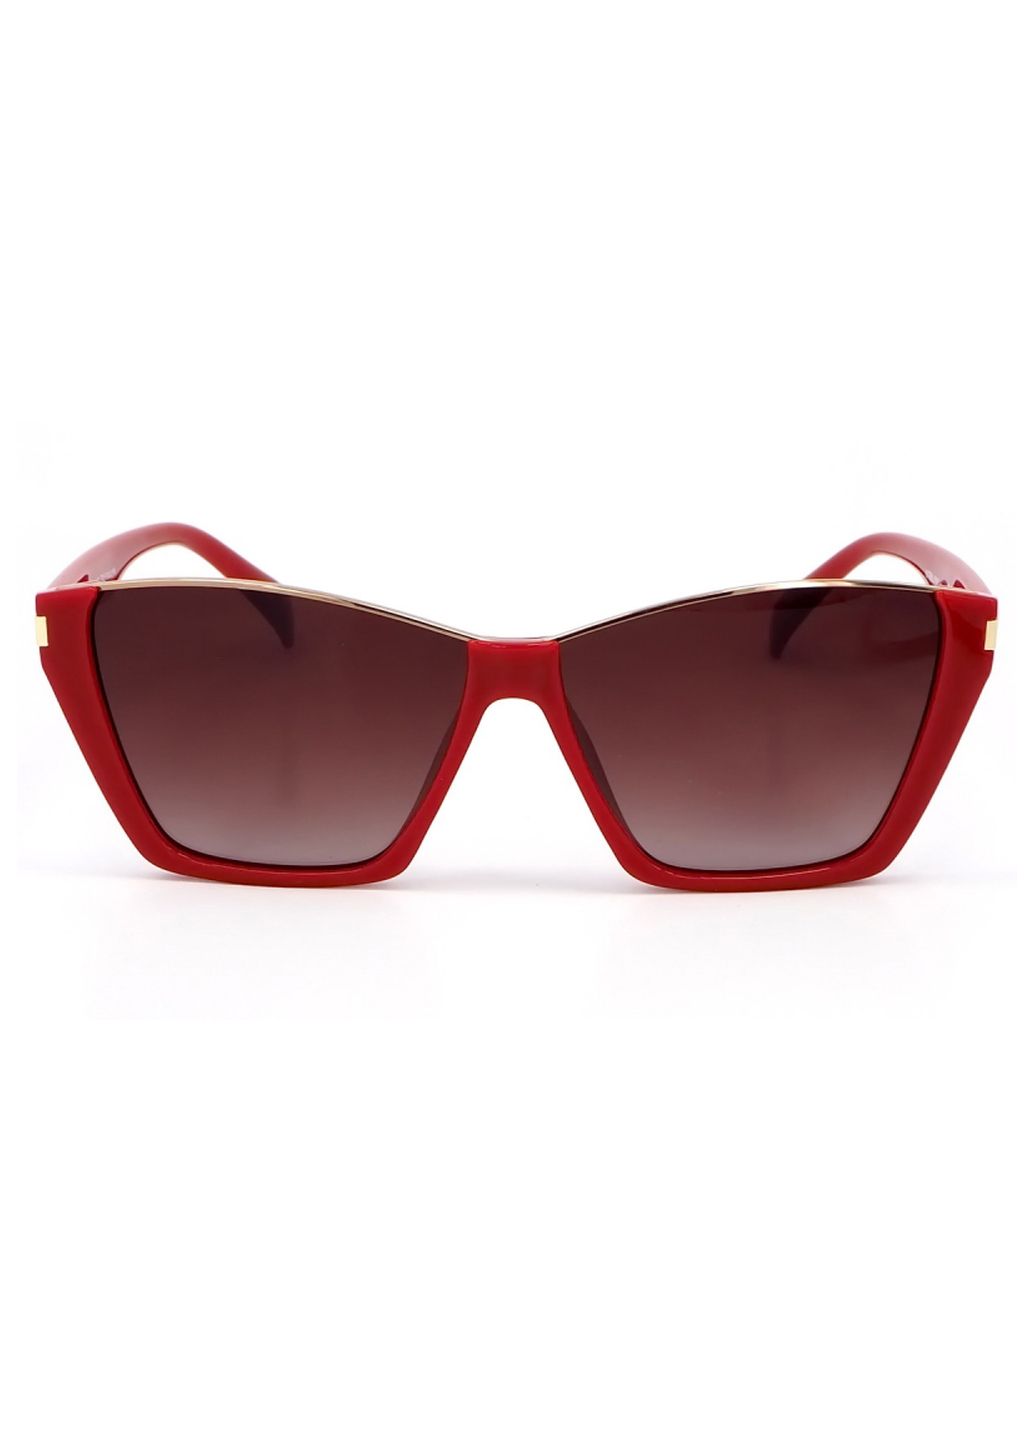 Купить Женские солнцезащитные очки Katrin Jones с поляризацией KJ0858 180042 - Красный в интернет-магазине